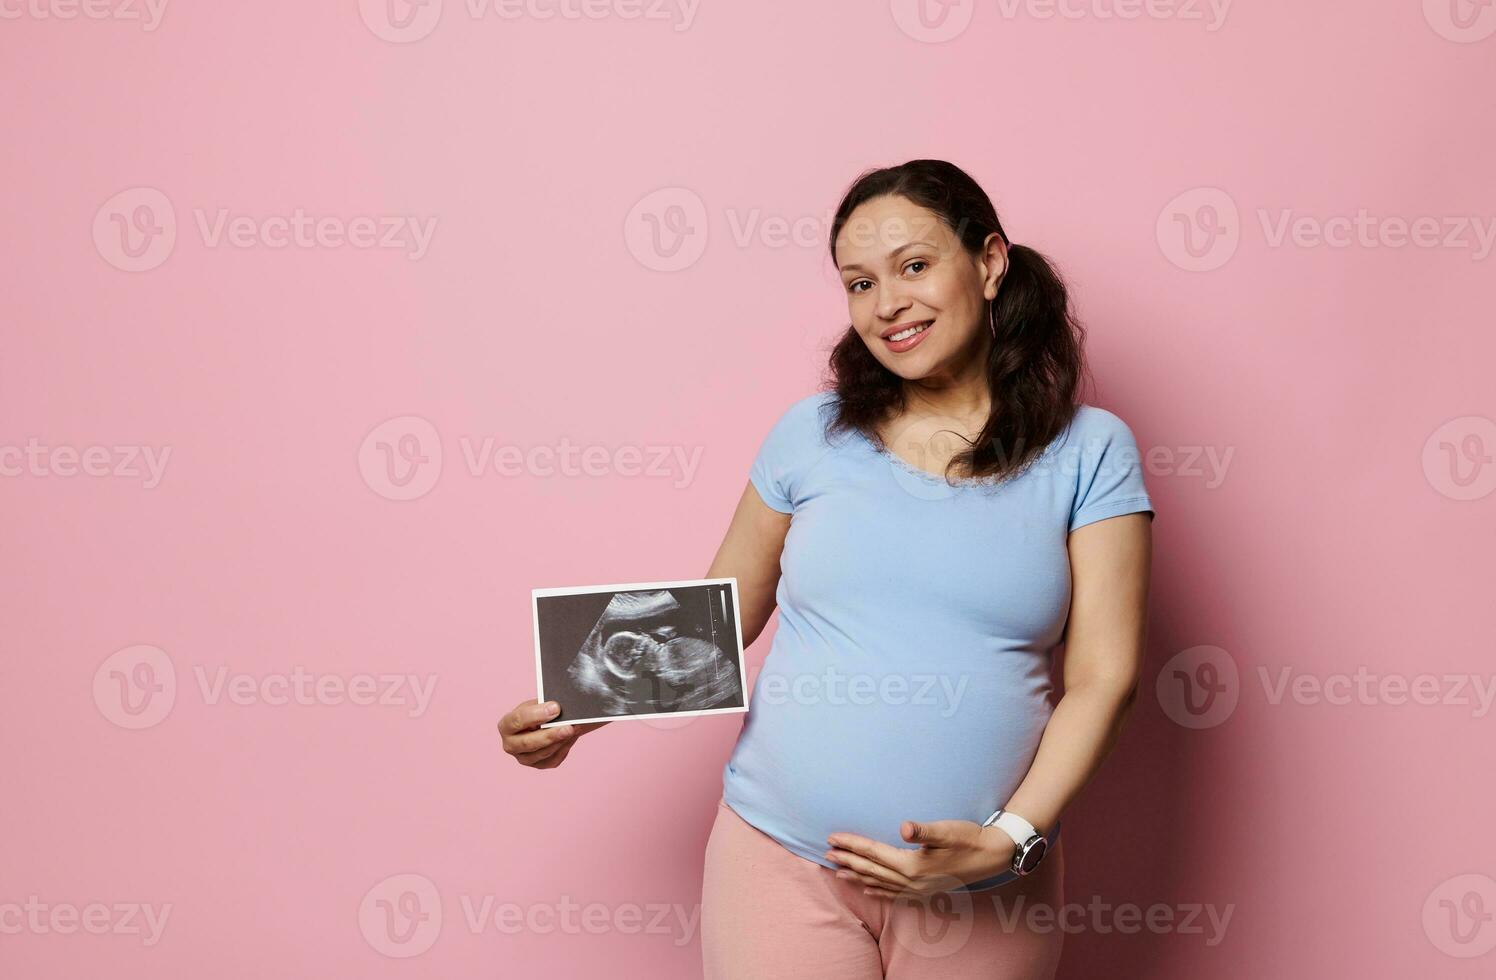 gravid vrouw glimlachen Bij camera, Holding baby echografie scannen en strelen haar zwanger buik, geïsoleerd roze achtergrond foto